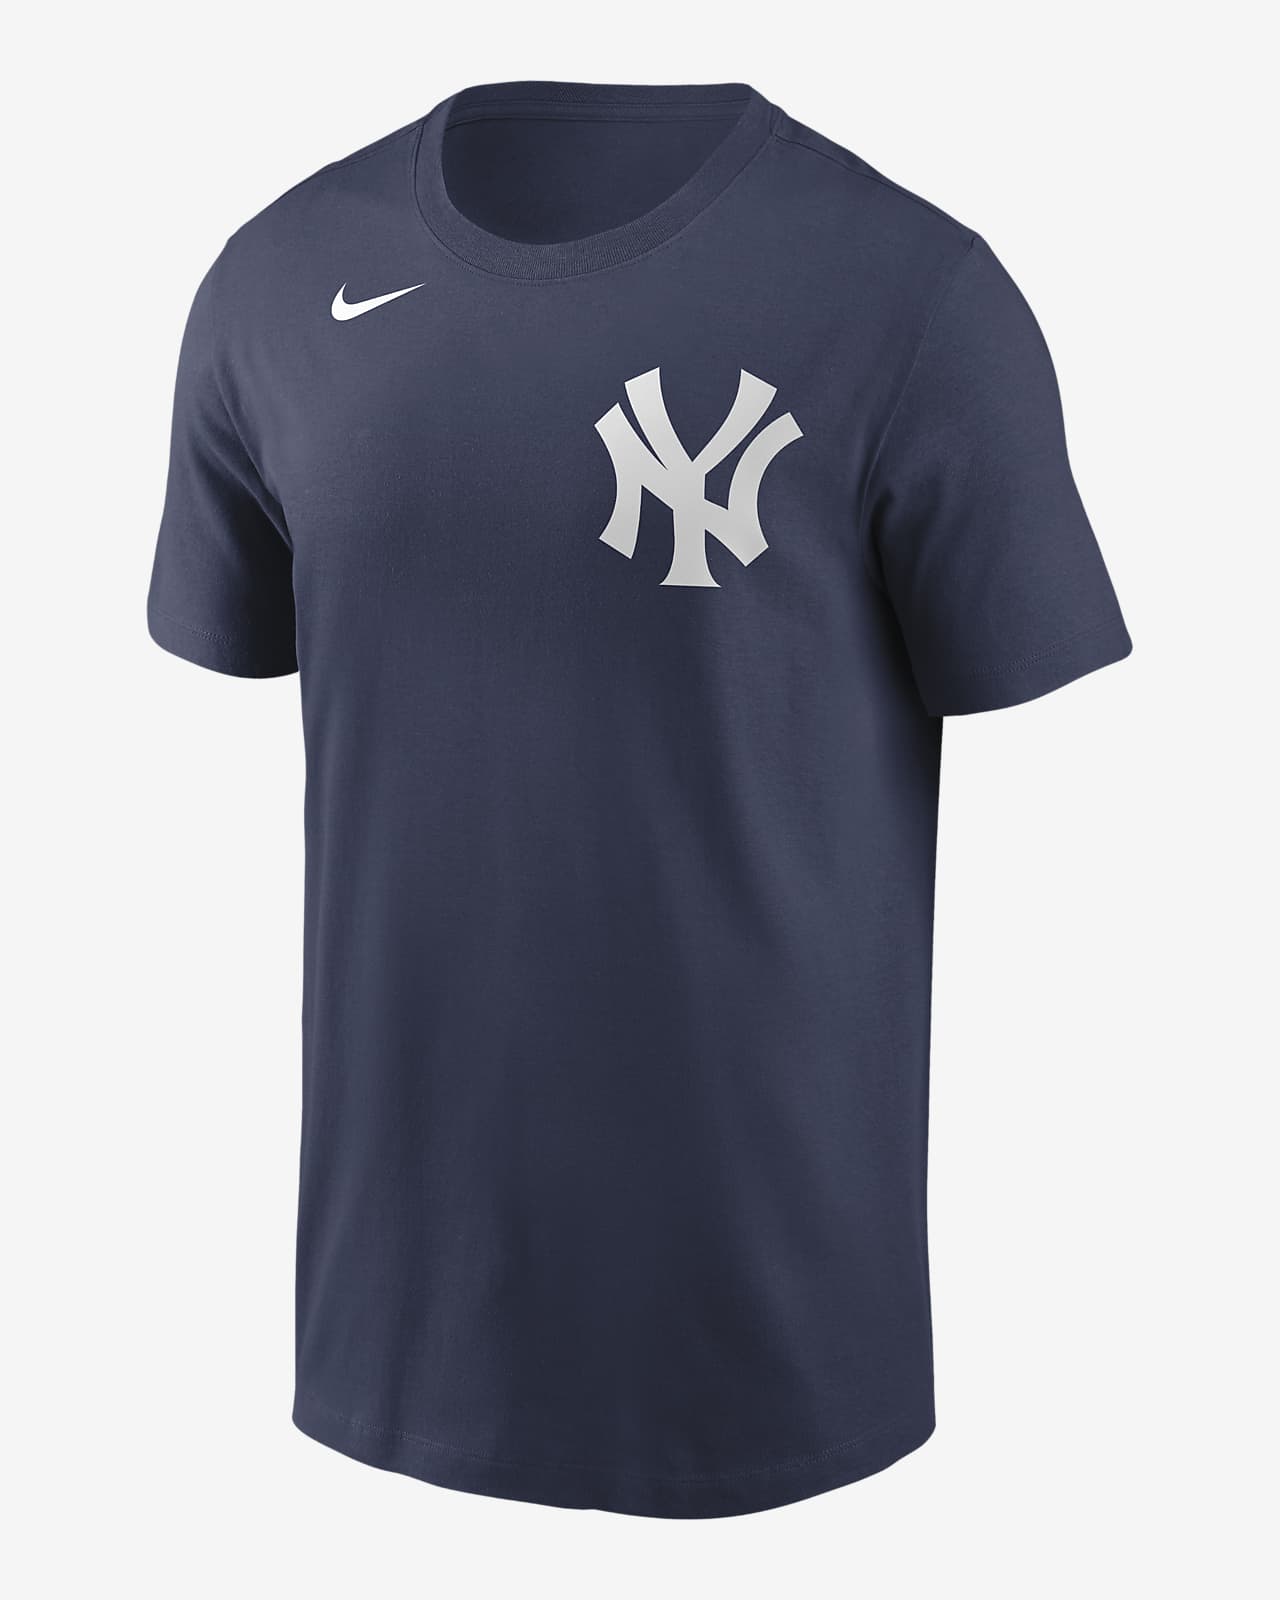 MLB New York Yankees (Gio Urshela) Men's T-Shirt